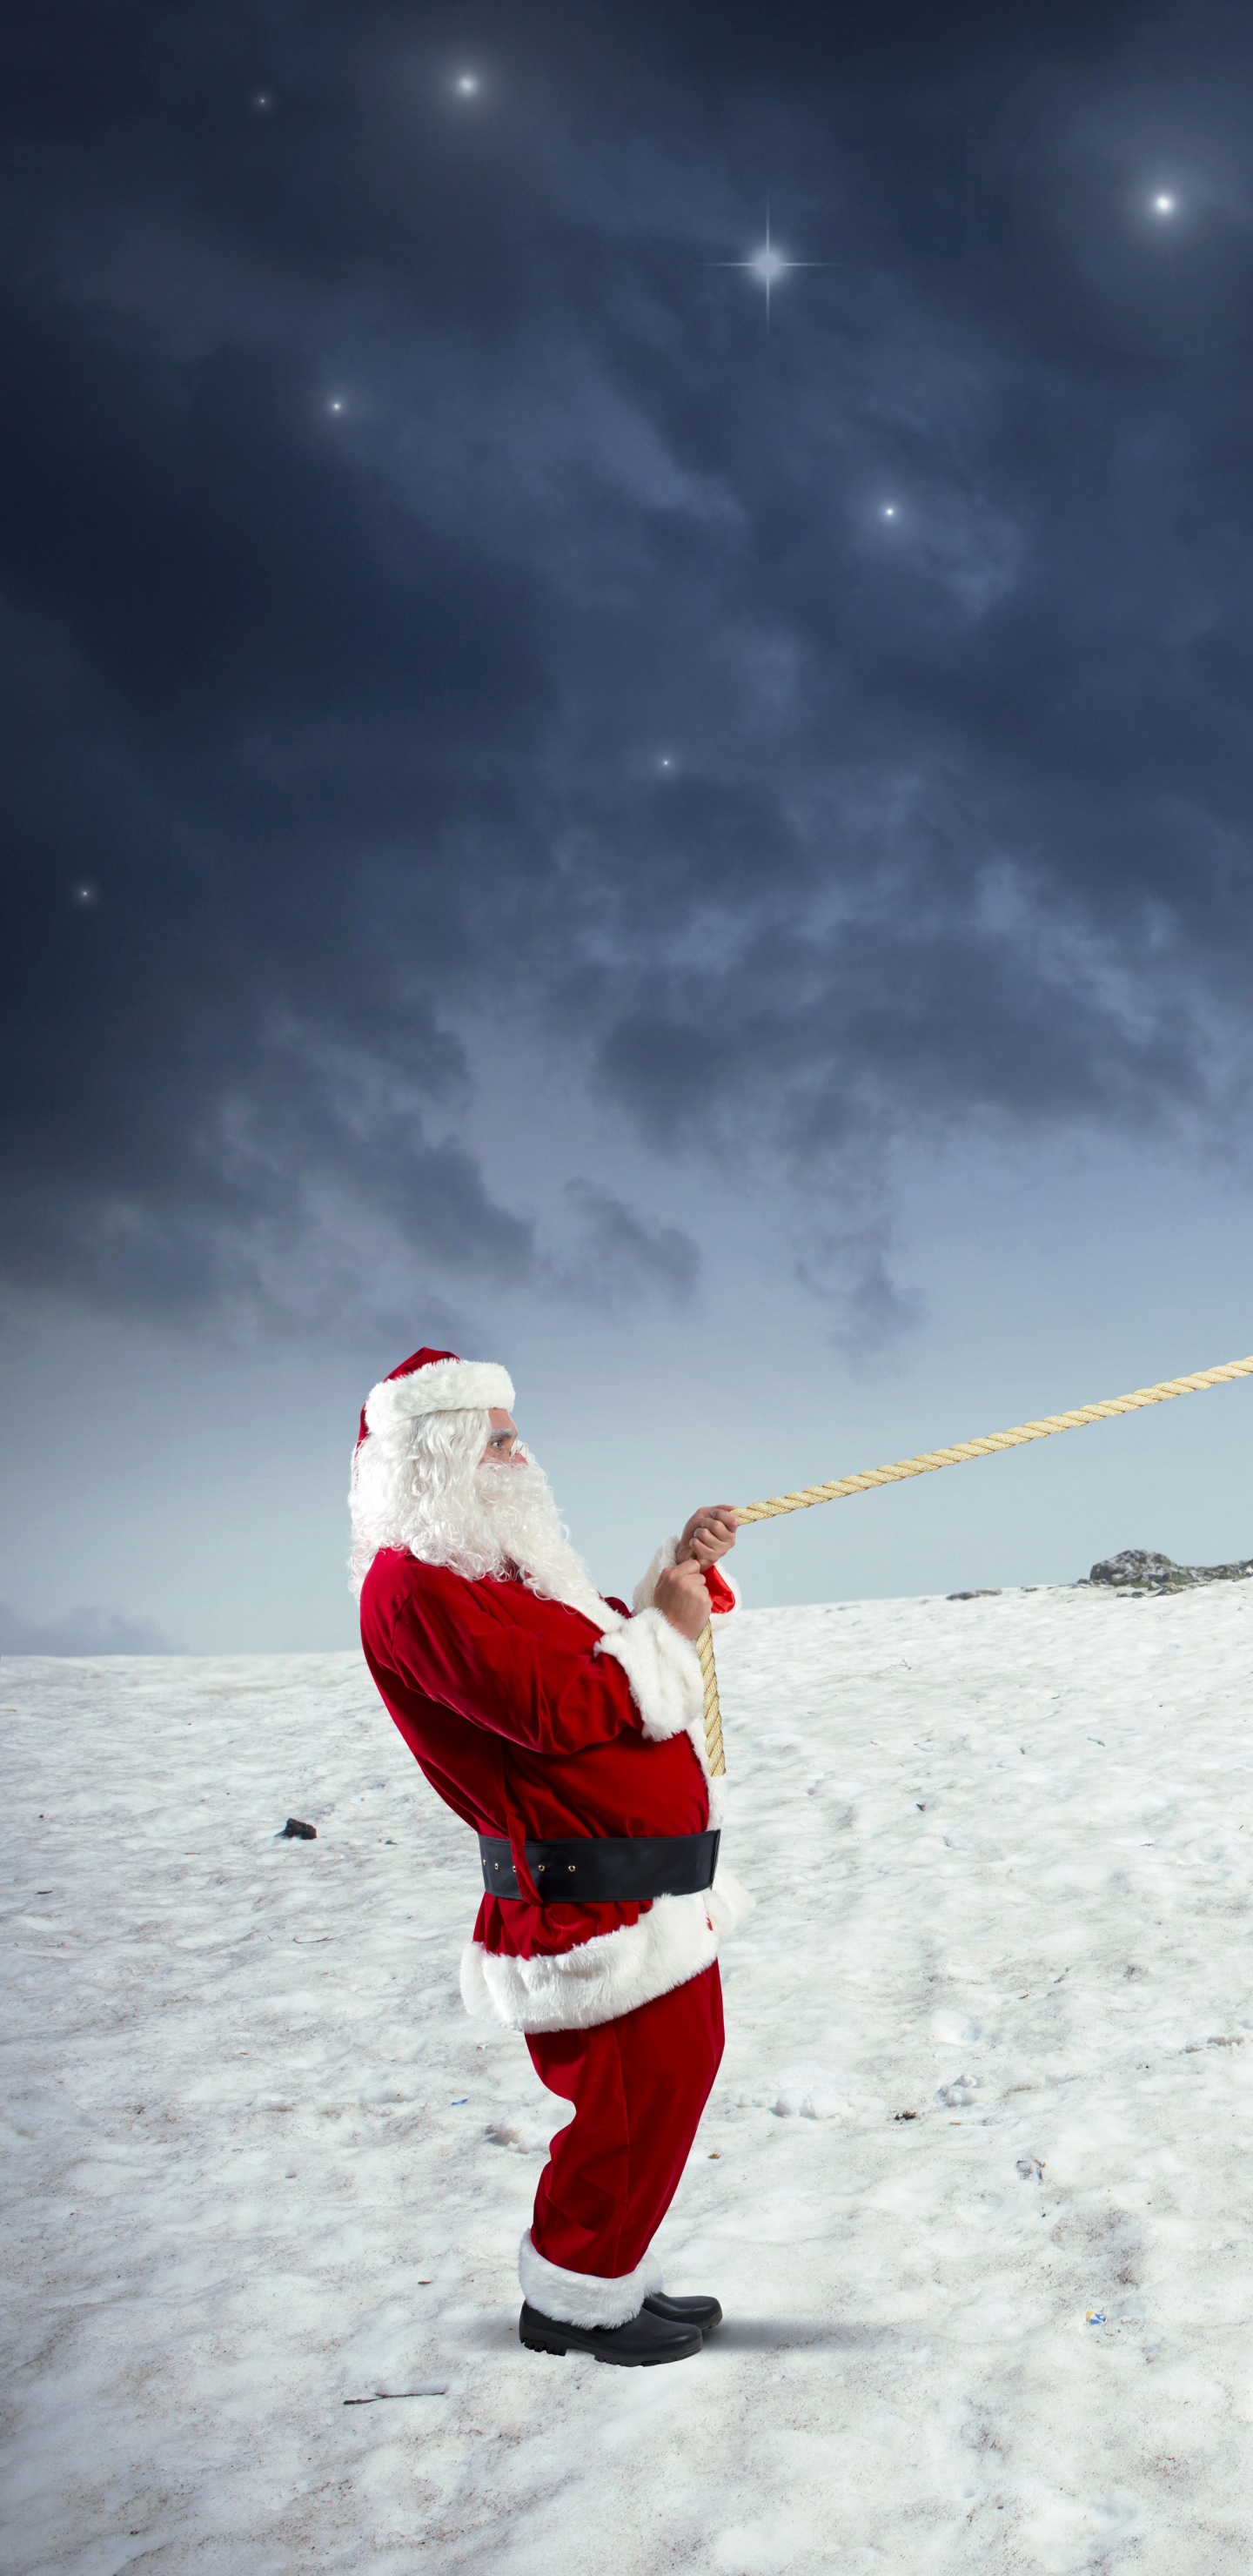 Weihnachtsmann, Schnee, Winter, Cloud, Einfrieren. Wallpaper in 1440x2960 Resolution